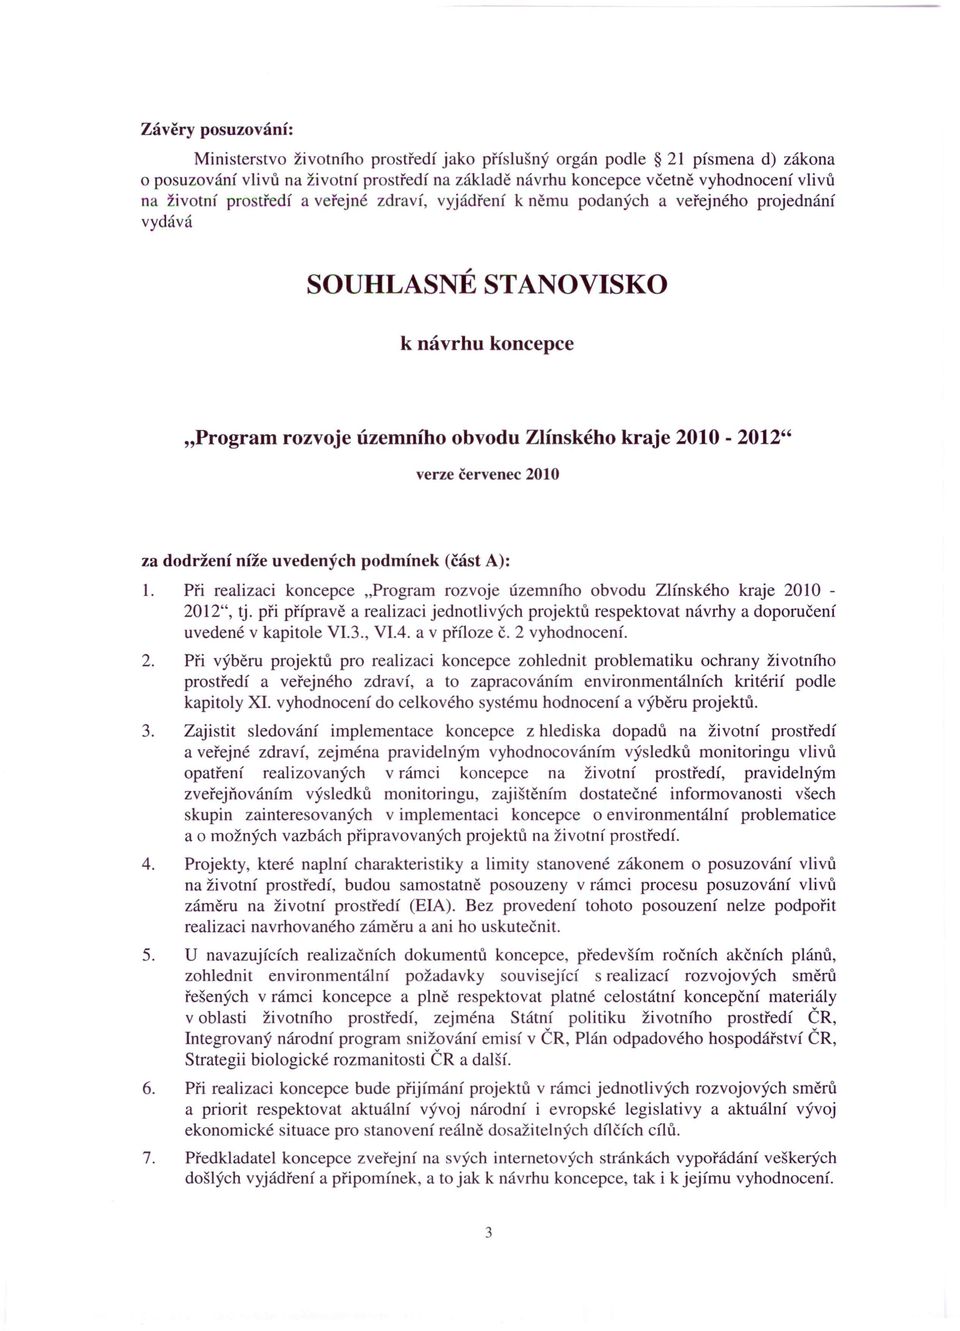 červenec 2010 za dodržení níže uvedených podmínek (část A): 1. Při realizaci koncepce "Program rozvoje územního obvodu Zlínského kraje 2010-2012", tj.